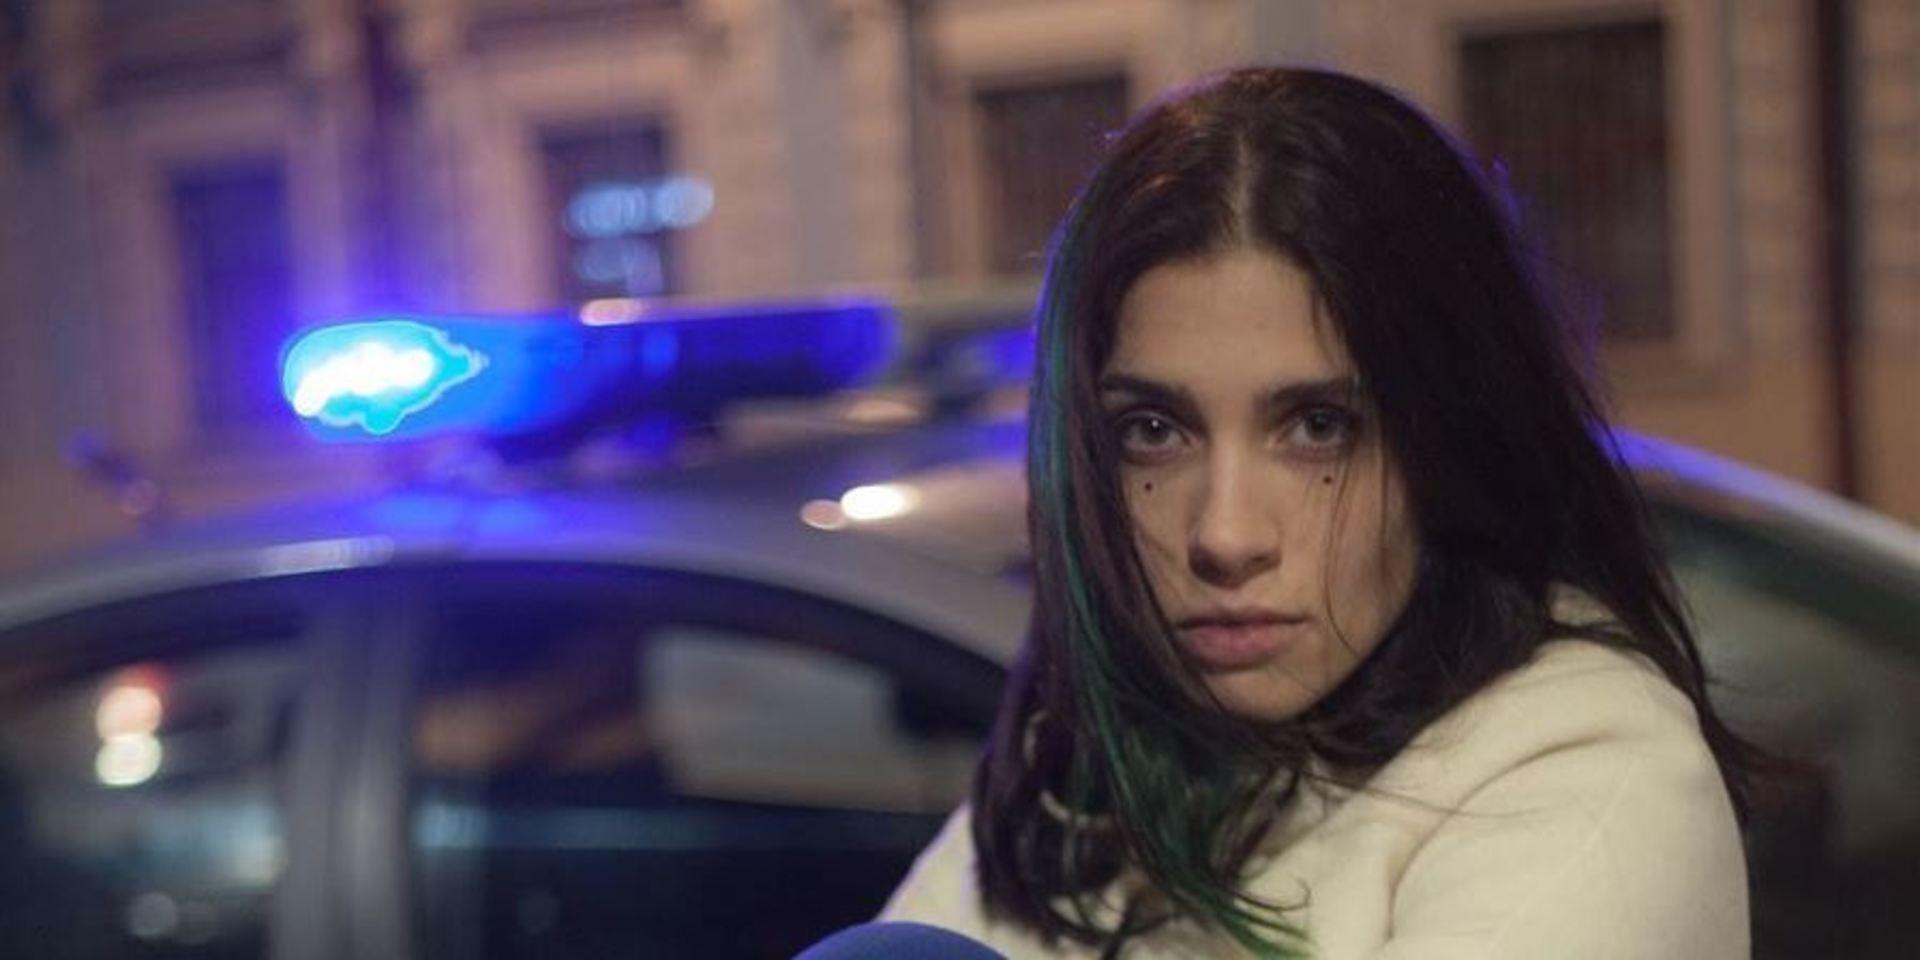 Nadya Tolokonnikova är en av konstnärerna och aktivisterna i Pussy Riot som dömdes till fängelse år 2012 av en rysk domstol  för ”huliganism motiverat av religiöst hat” efter en illegal performance inne i Frälsarkatedralen i Moskva. 